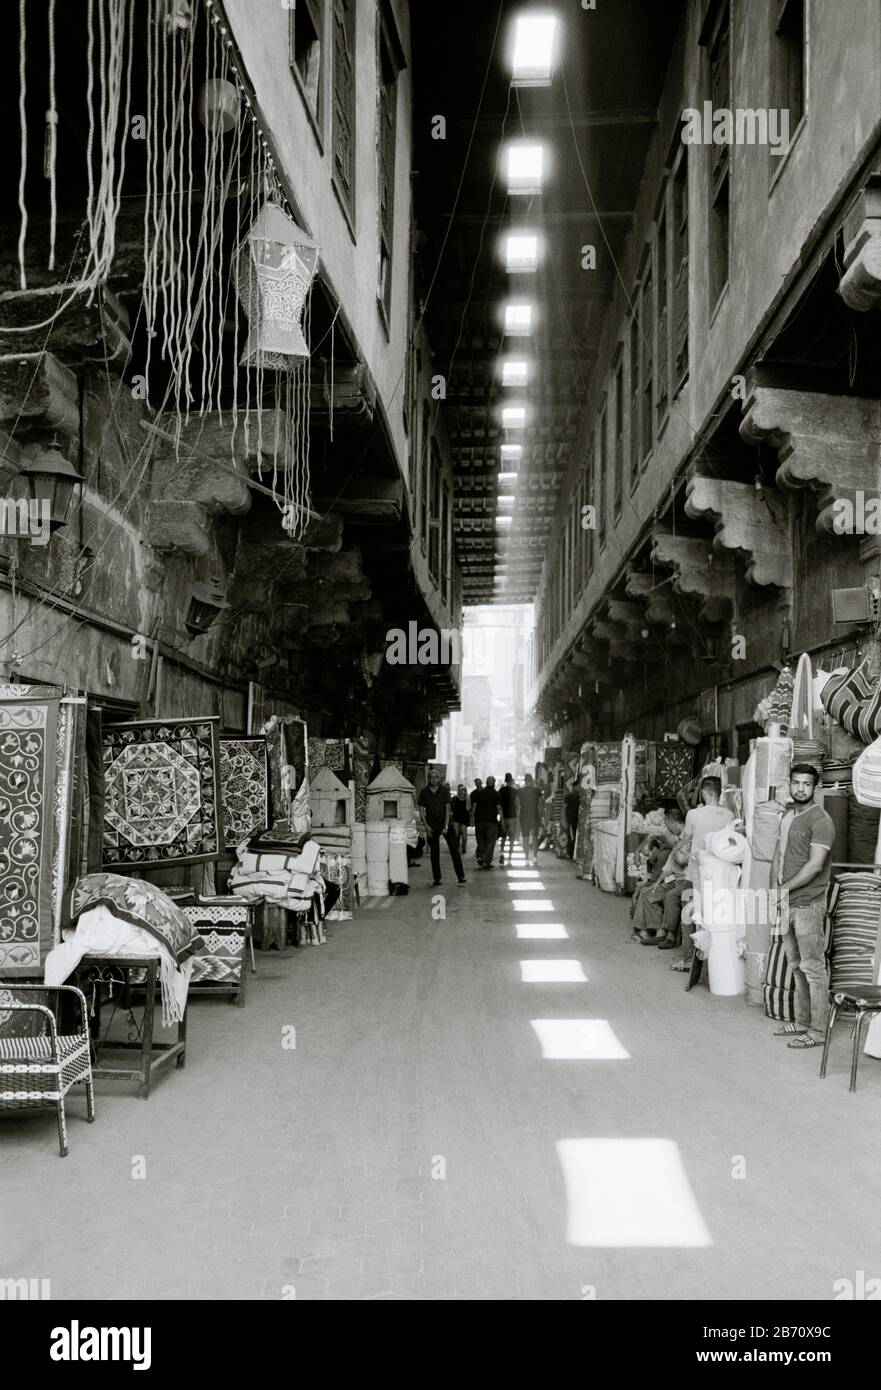 Rue des tentmakers Al Khayamiya dans l'historique Qasaba de Radwan Bey un bazar de marché souk dans le Caire islamique en Egypte en Afrique du Nord Moyen-Orient Banque D'Images